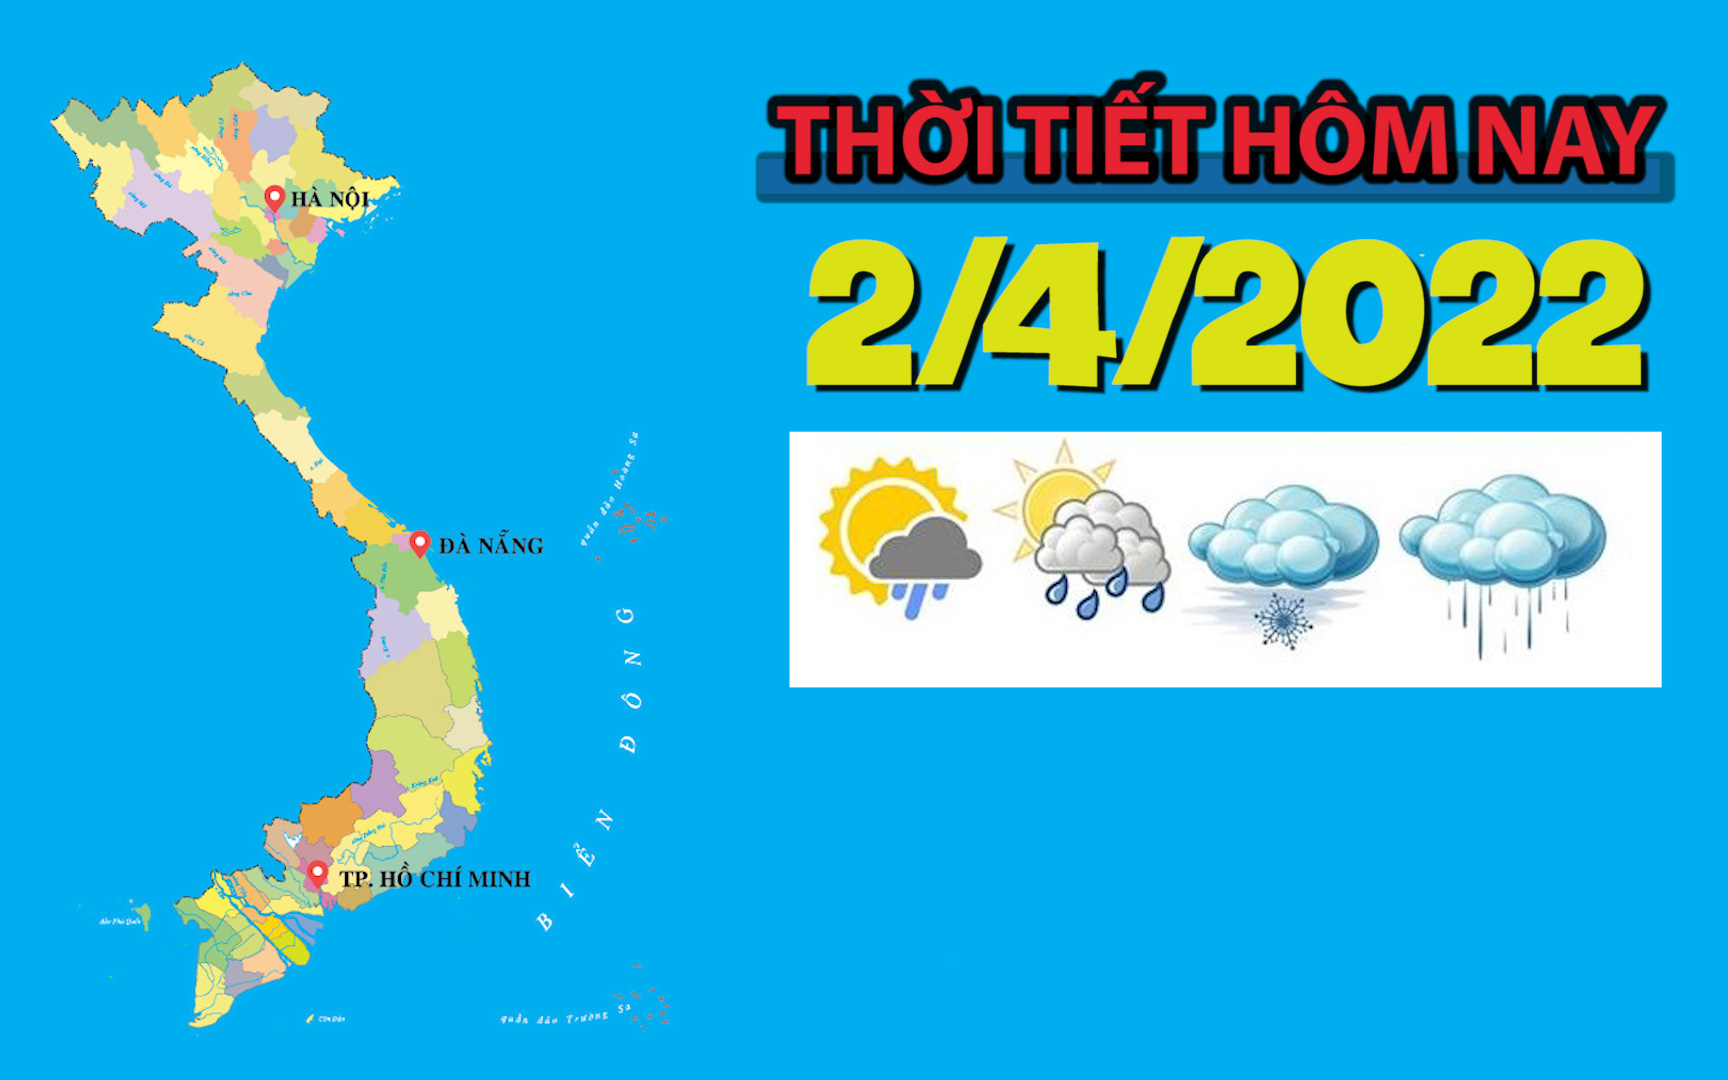 Thời tiết hôm nay 2/4/2022: Hà Nội tiếp tục có mưa rét, nhiệt độ thấp nhất 15 độ C